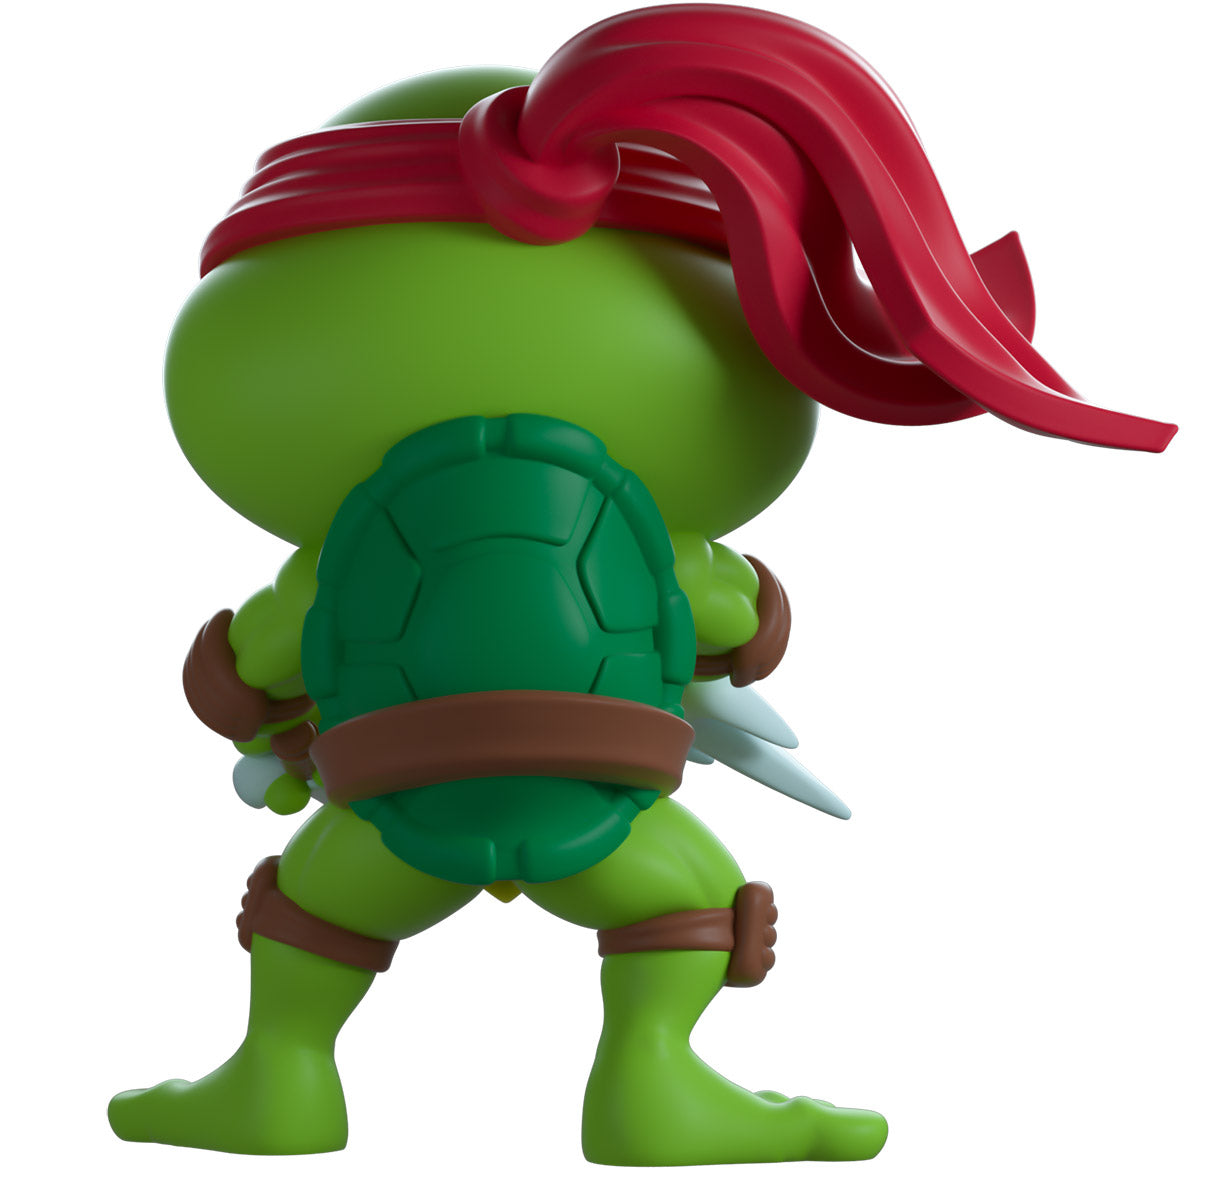 Raphael (Classic) Youtooz Teenage Mutant Ninja Turtles Vinyl figurine Raphael (Classic) 10 cm